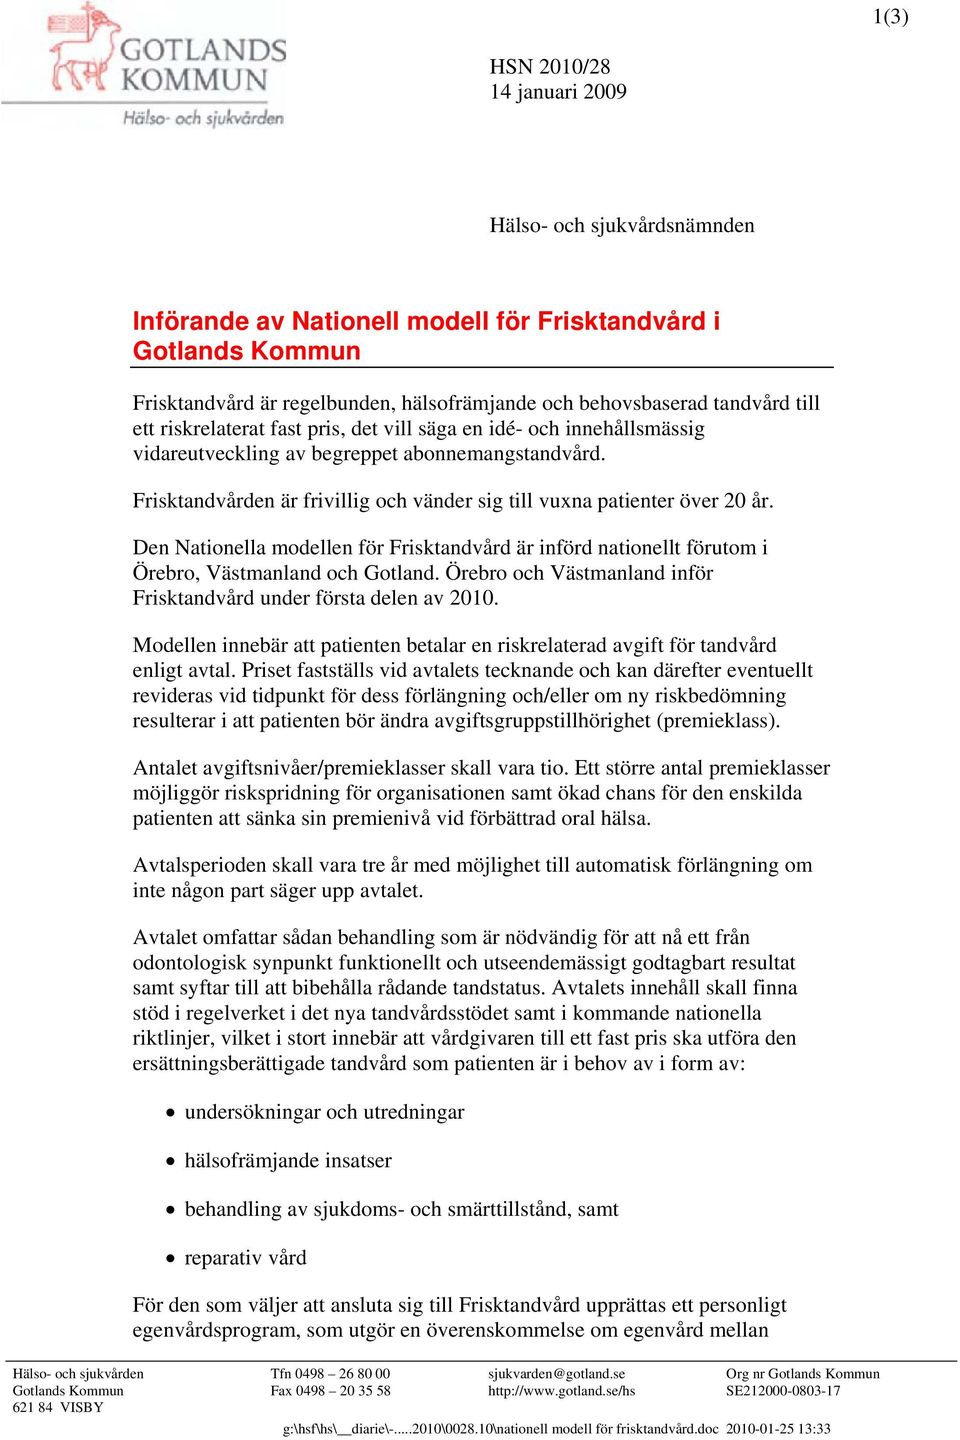 Den Nationella modellen för Frisktandvård är införd nationellt förutom i Örebro, Västmanland och Gotland. Örebro och Västmanland inför Frisktandvård under första delen av 2010.